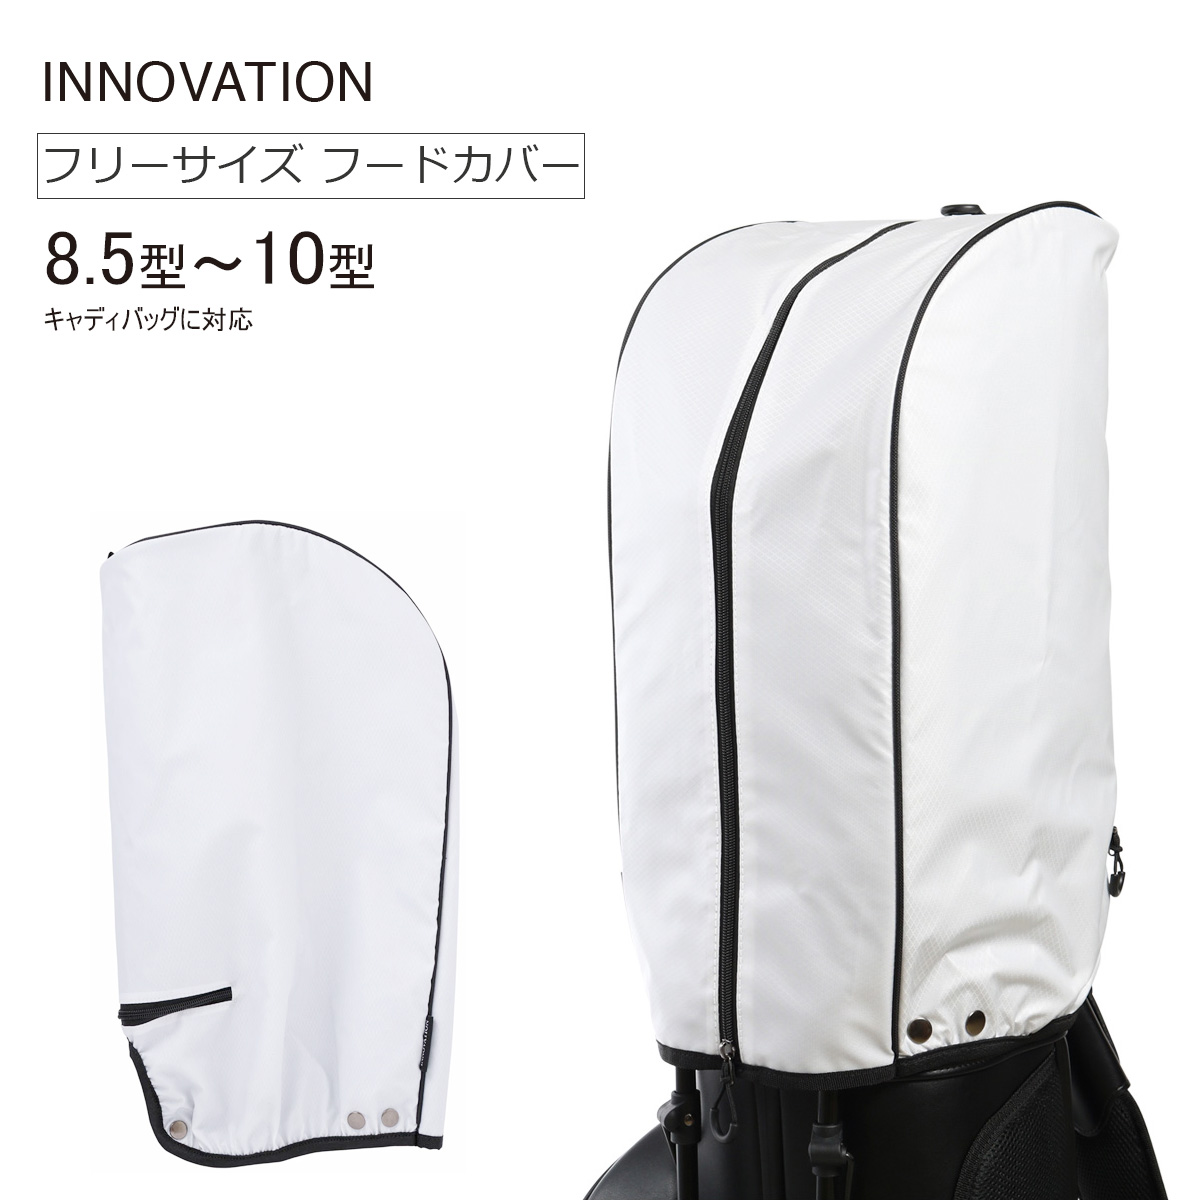 イノベーション ゴルフ キャディバッグ用フード カバー ホワイト 8.5型〜10型に対応 フリーサイズ INF002 INNOVATION